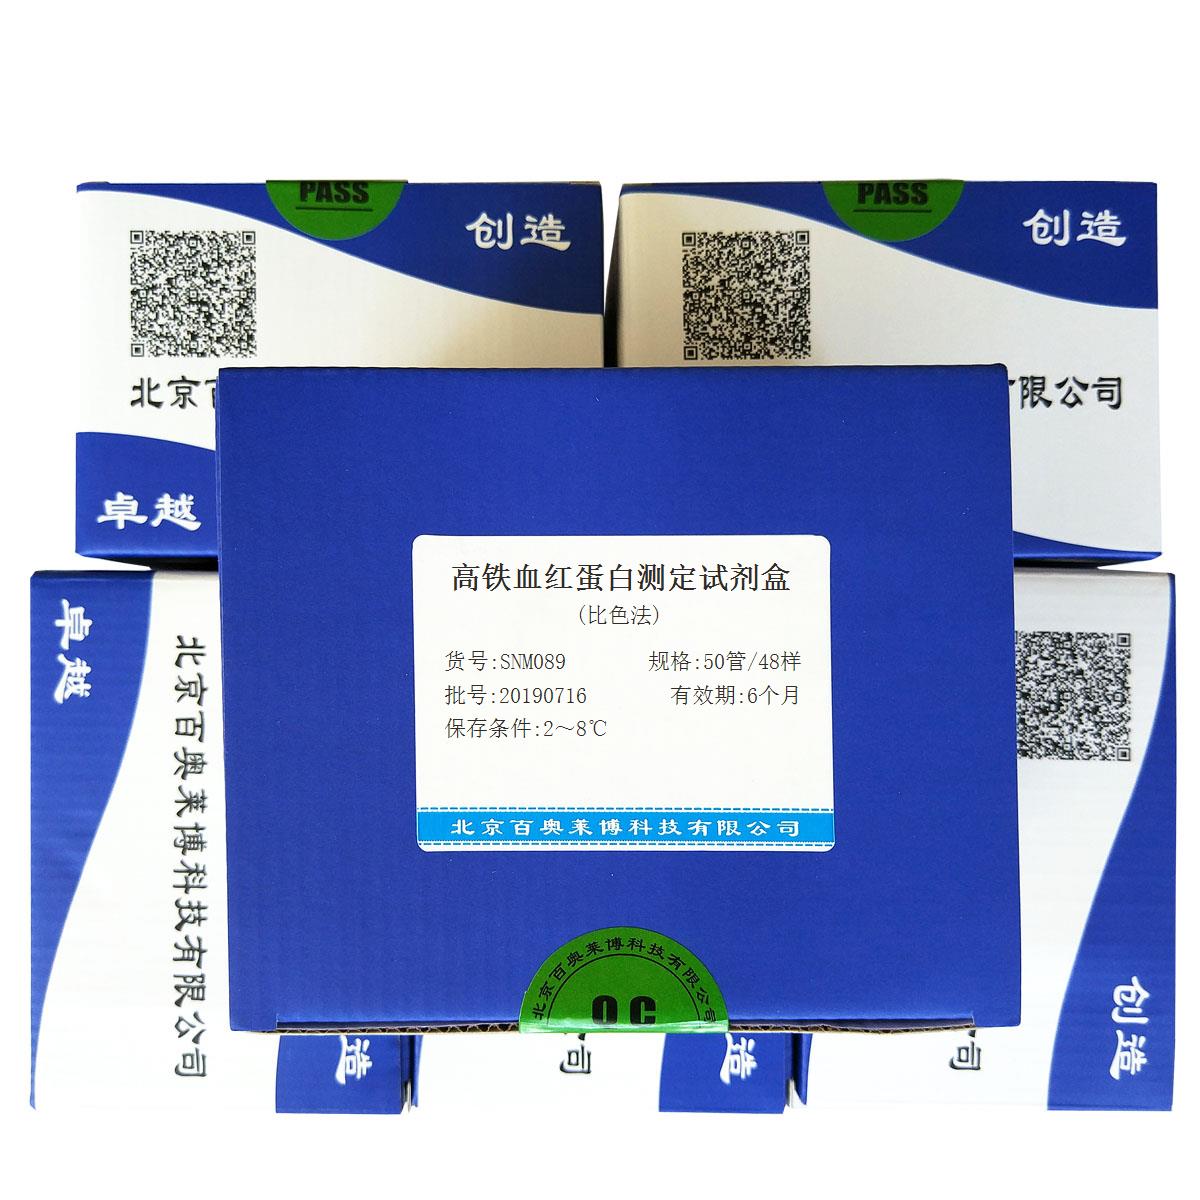 高铁血红蛋白测定试剂盒(比色法)北京供应商